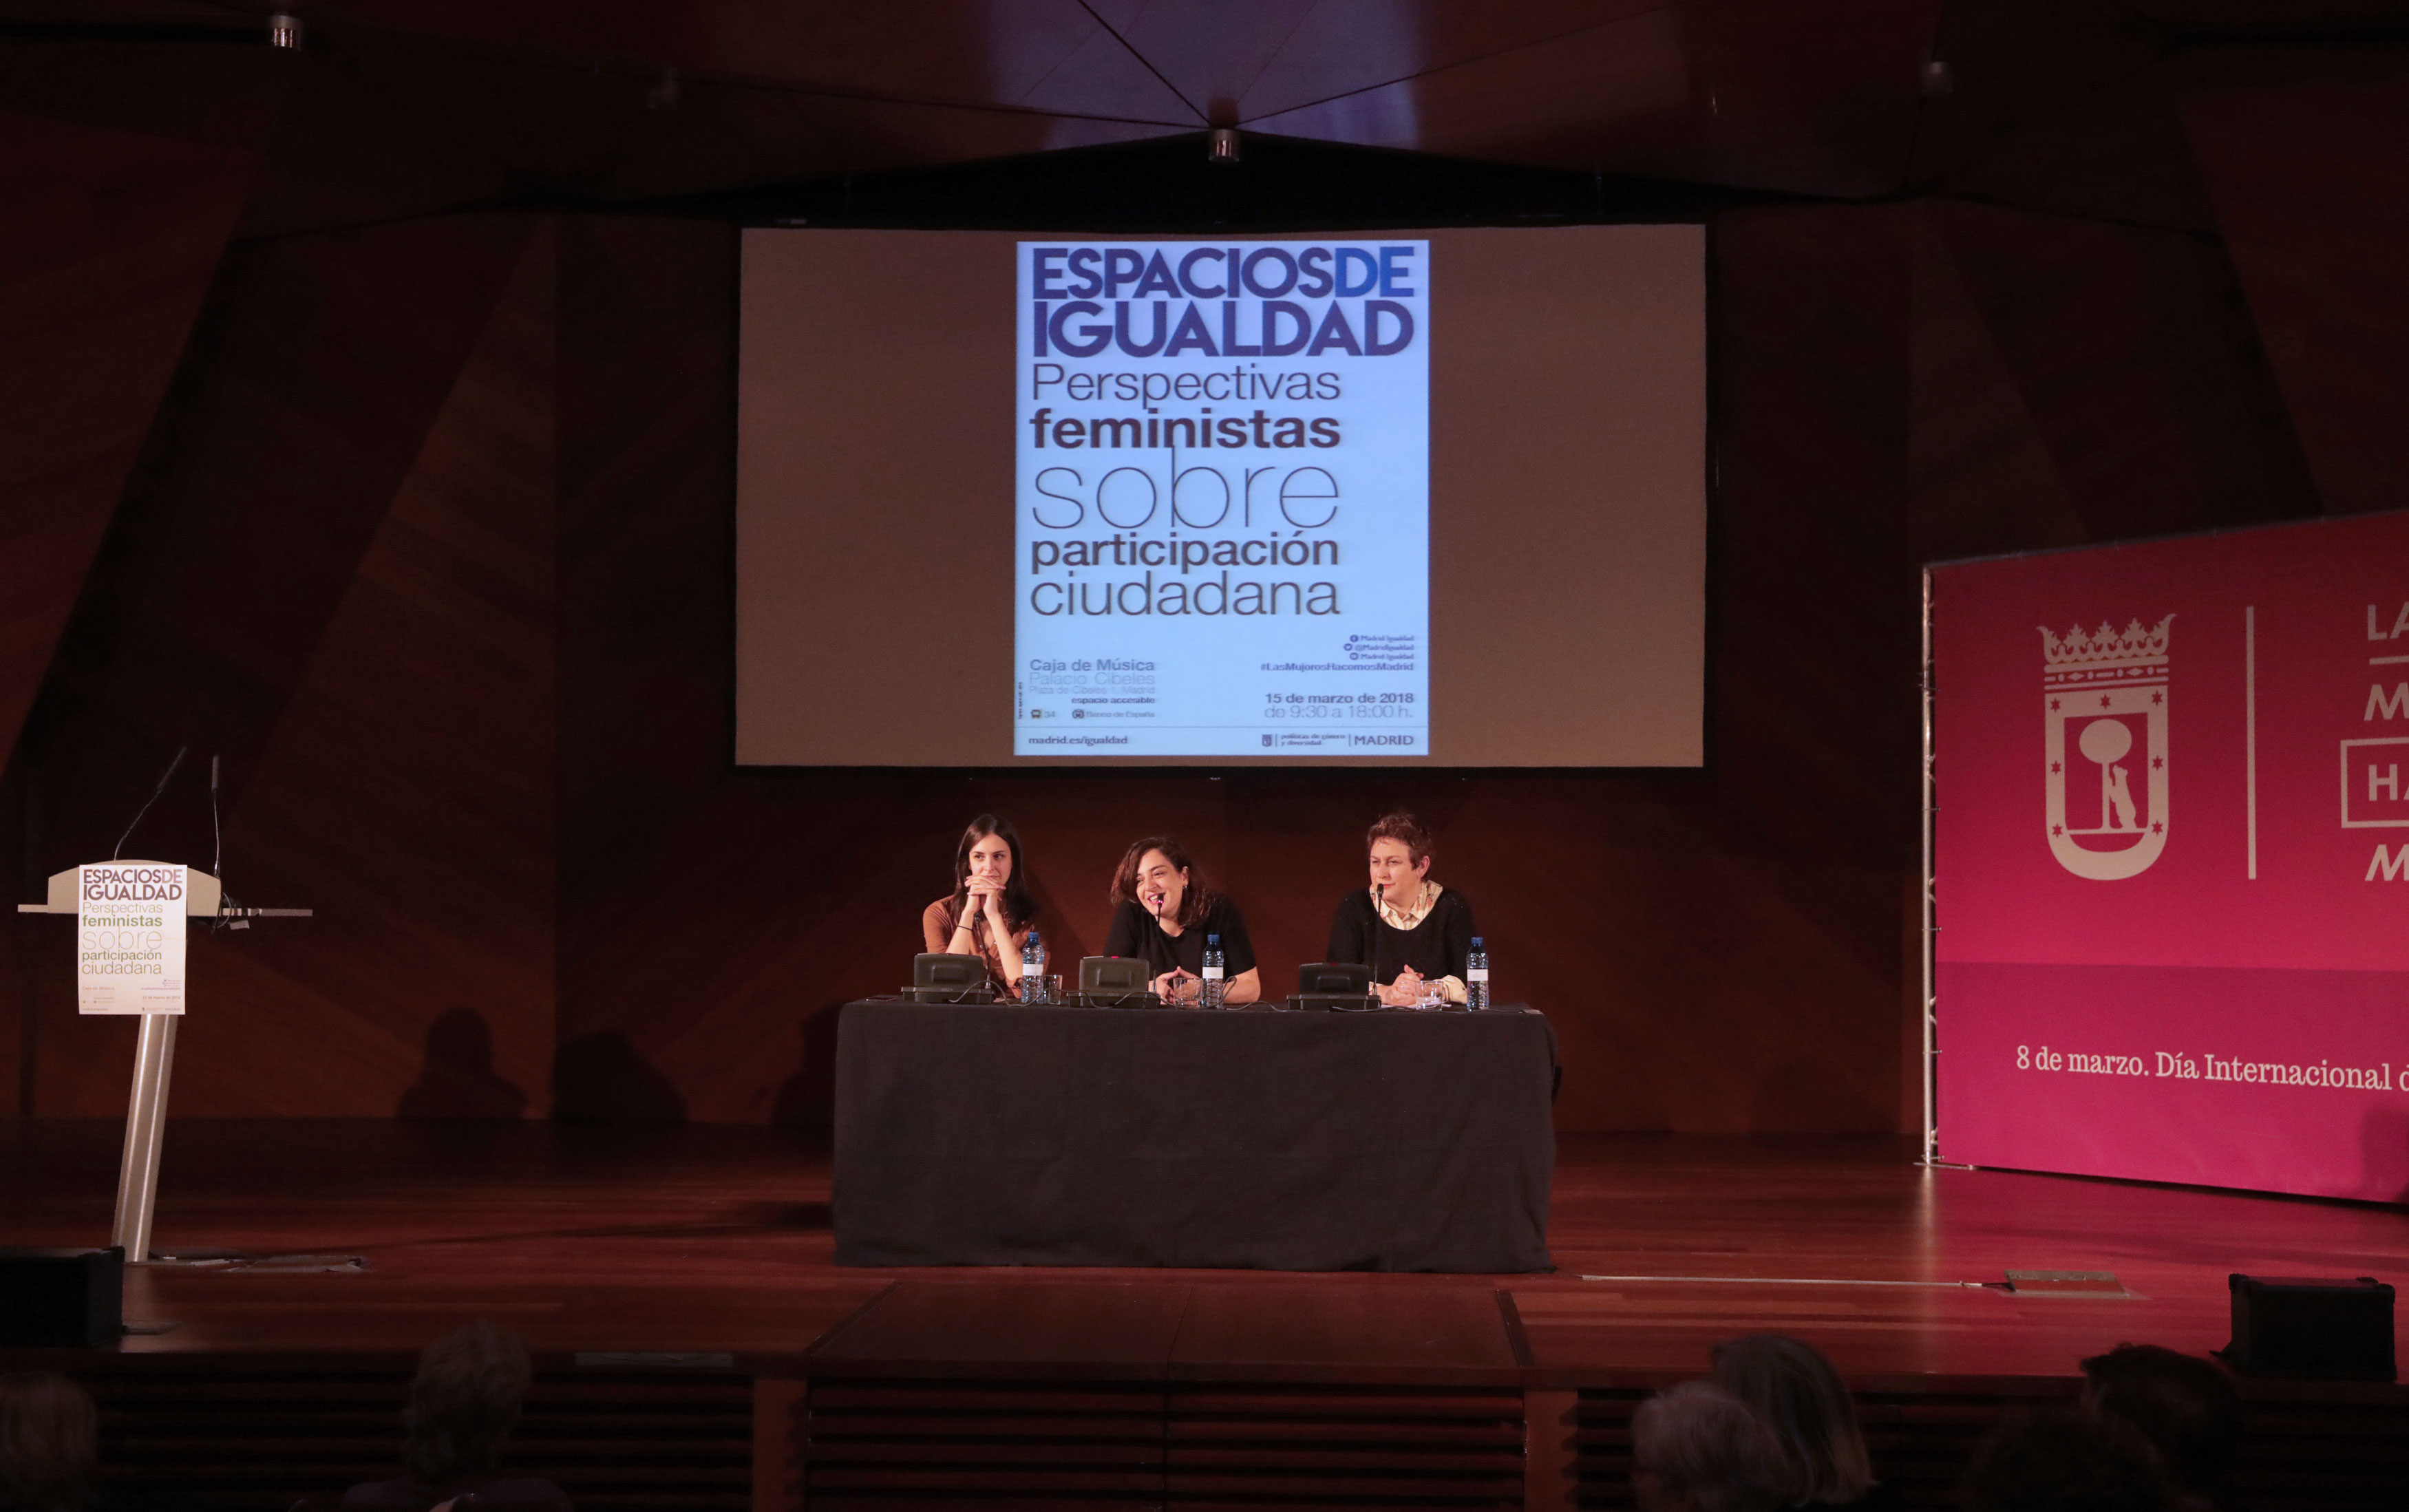 Jornada “Espacios de Igualdad. Perspectivas feministas sobre la participación ciudadana” 